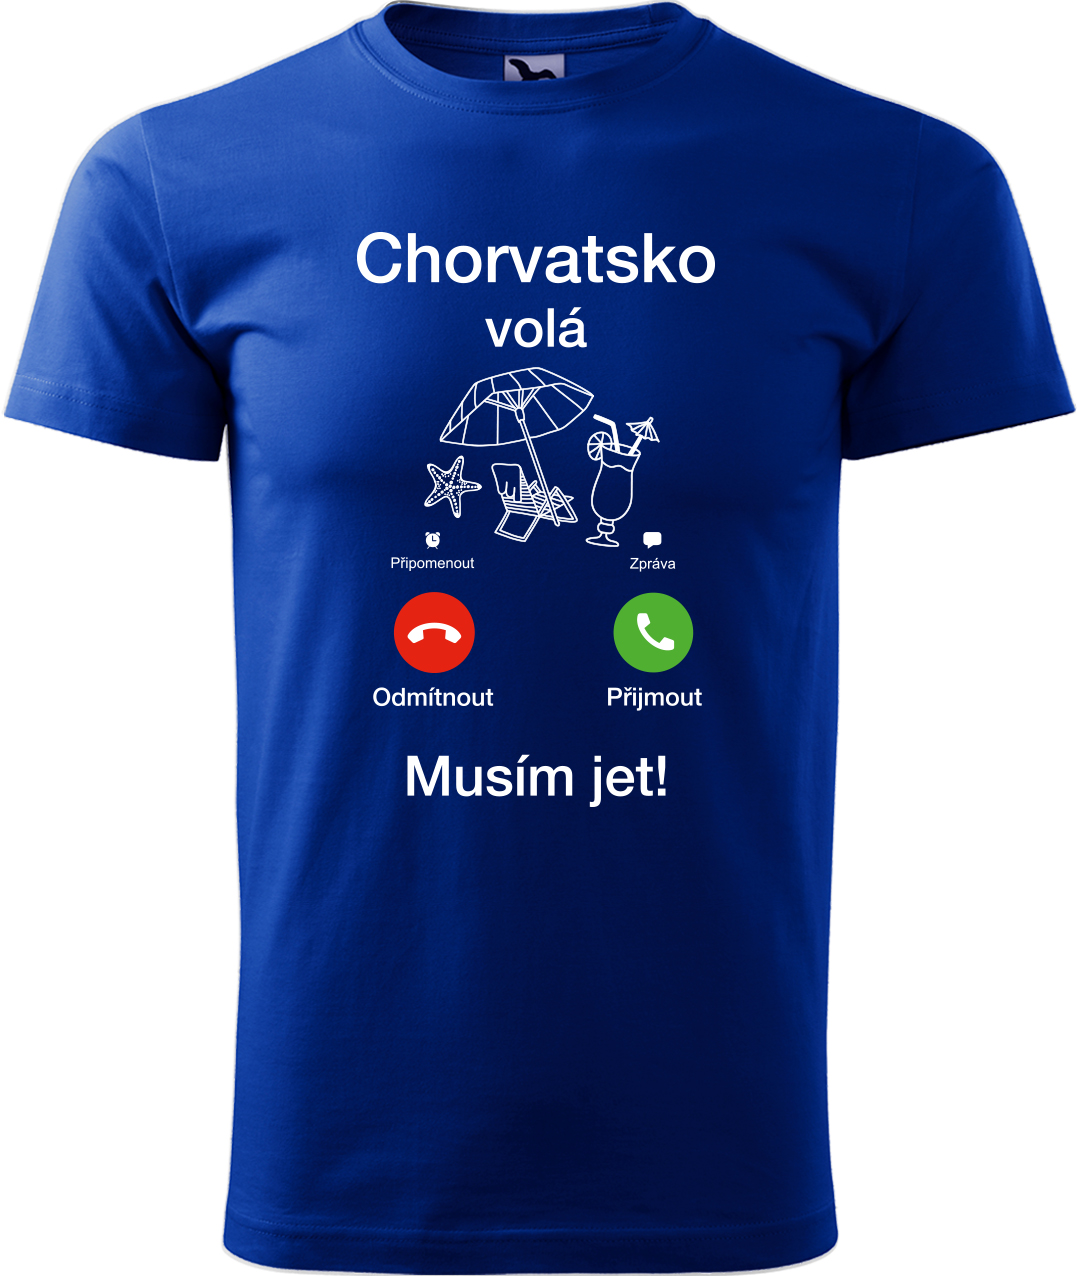 Pánské cestovatelské tričko - Chorvatsko volá - musím jet! Velikost: L, Barva: Královská modrá (05), Střih: pánský